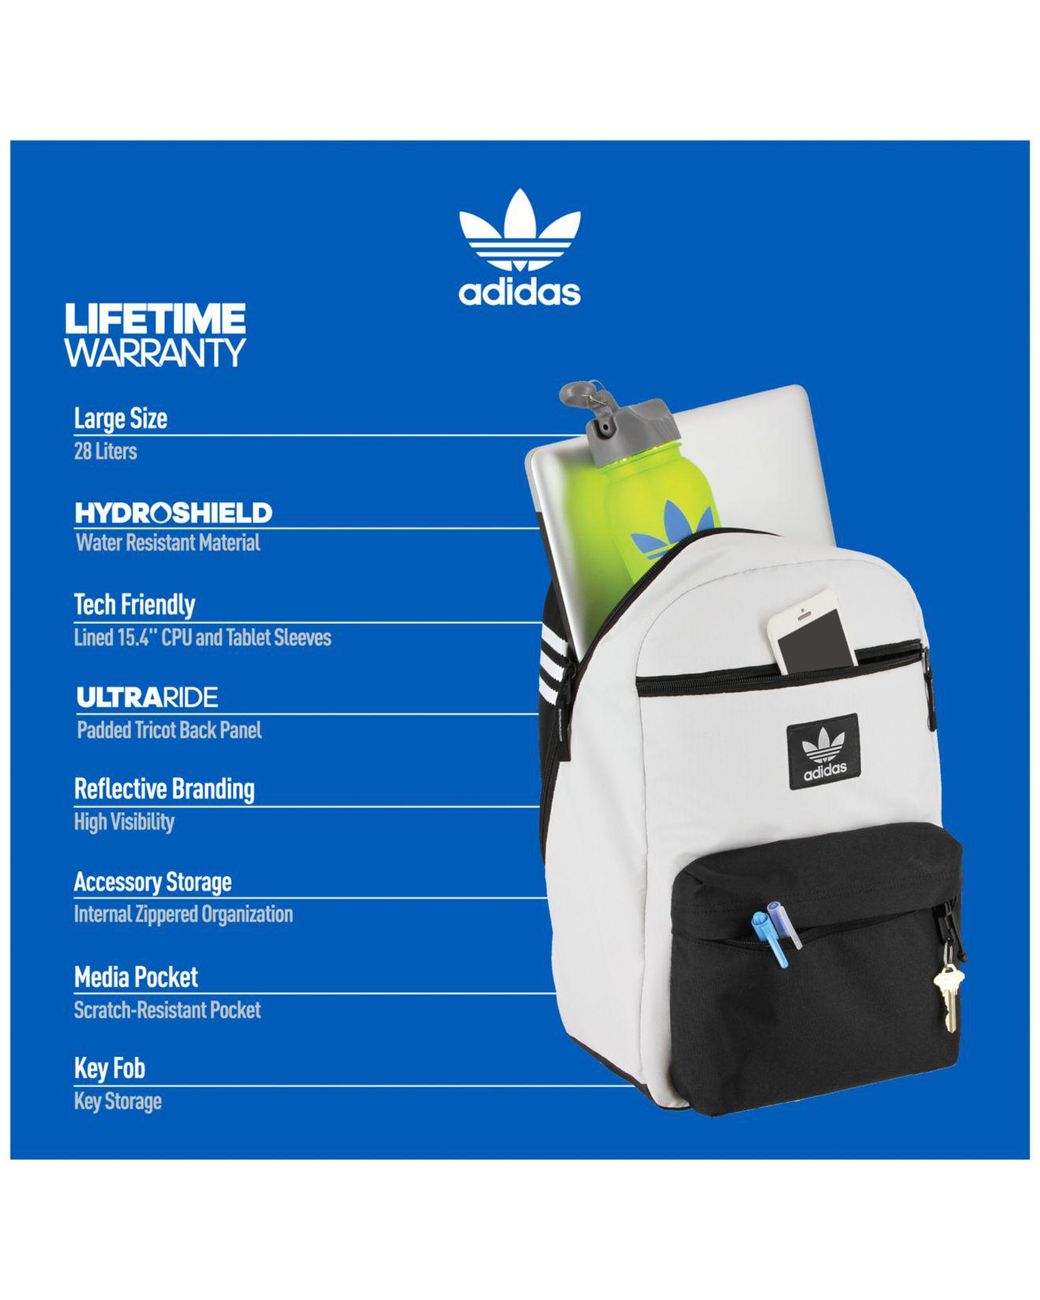 adidas backpack lifetime warranty